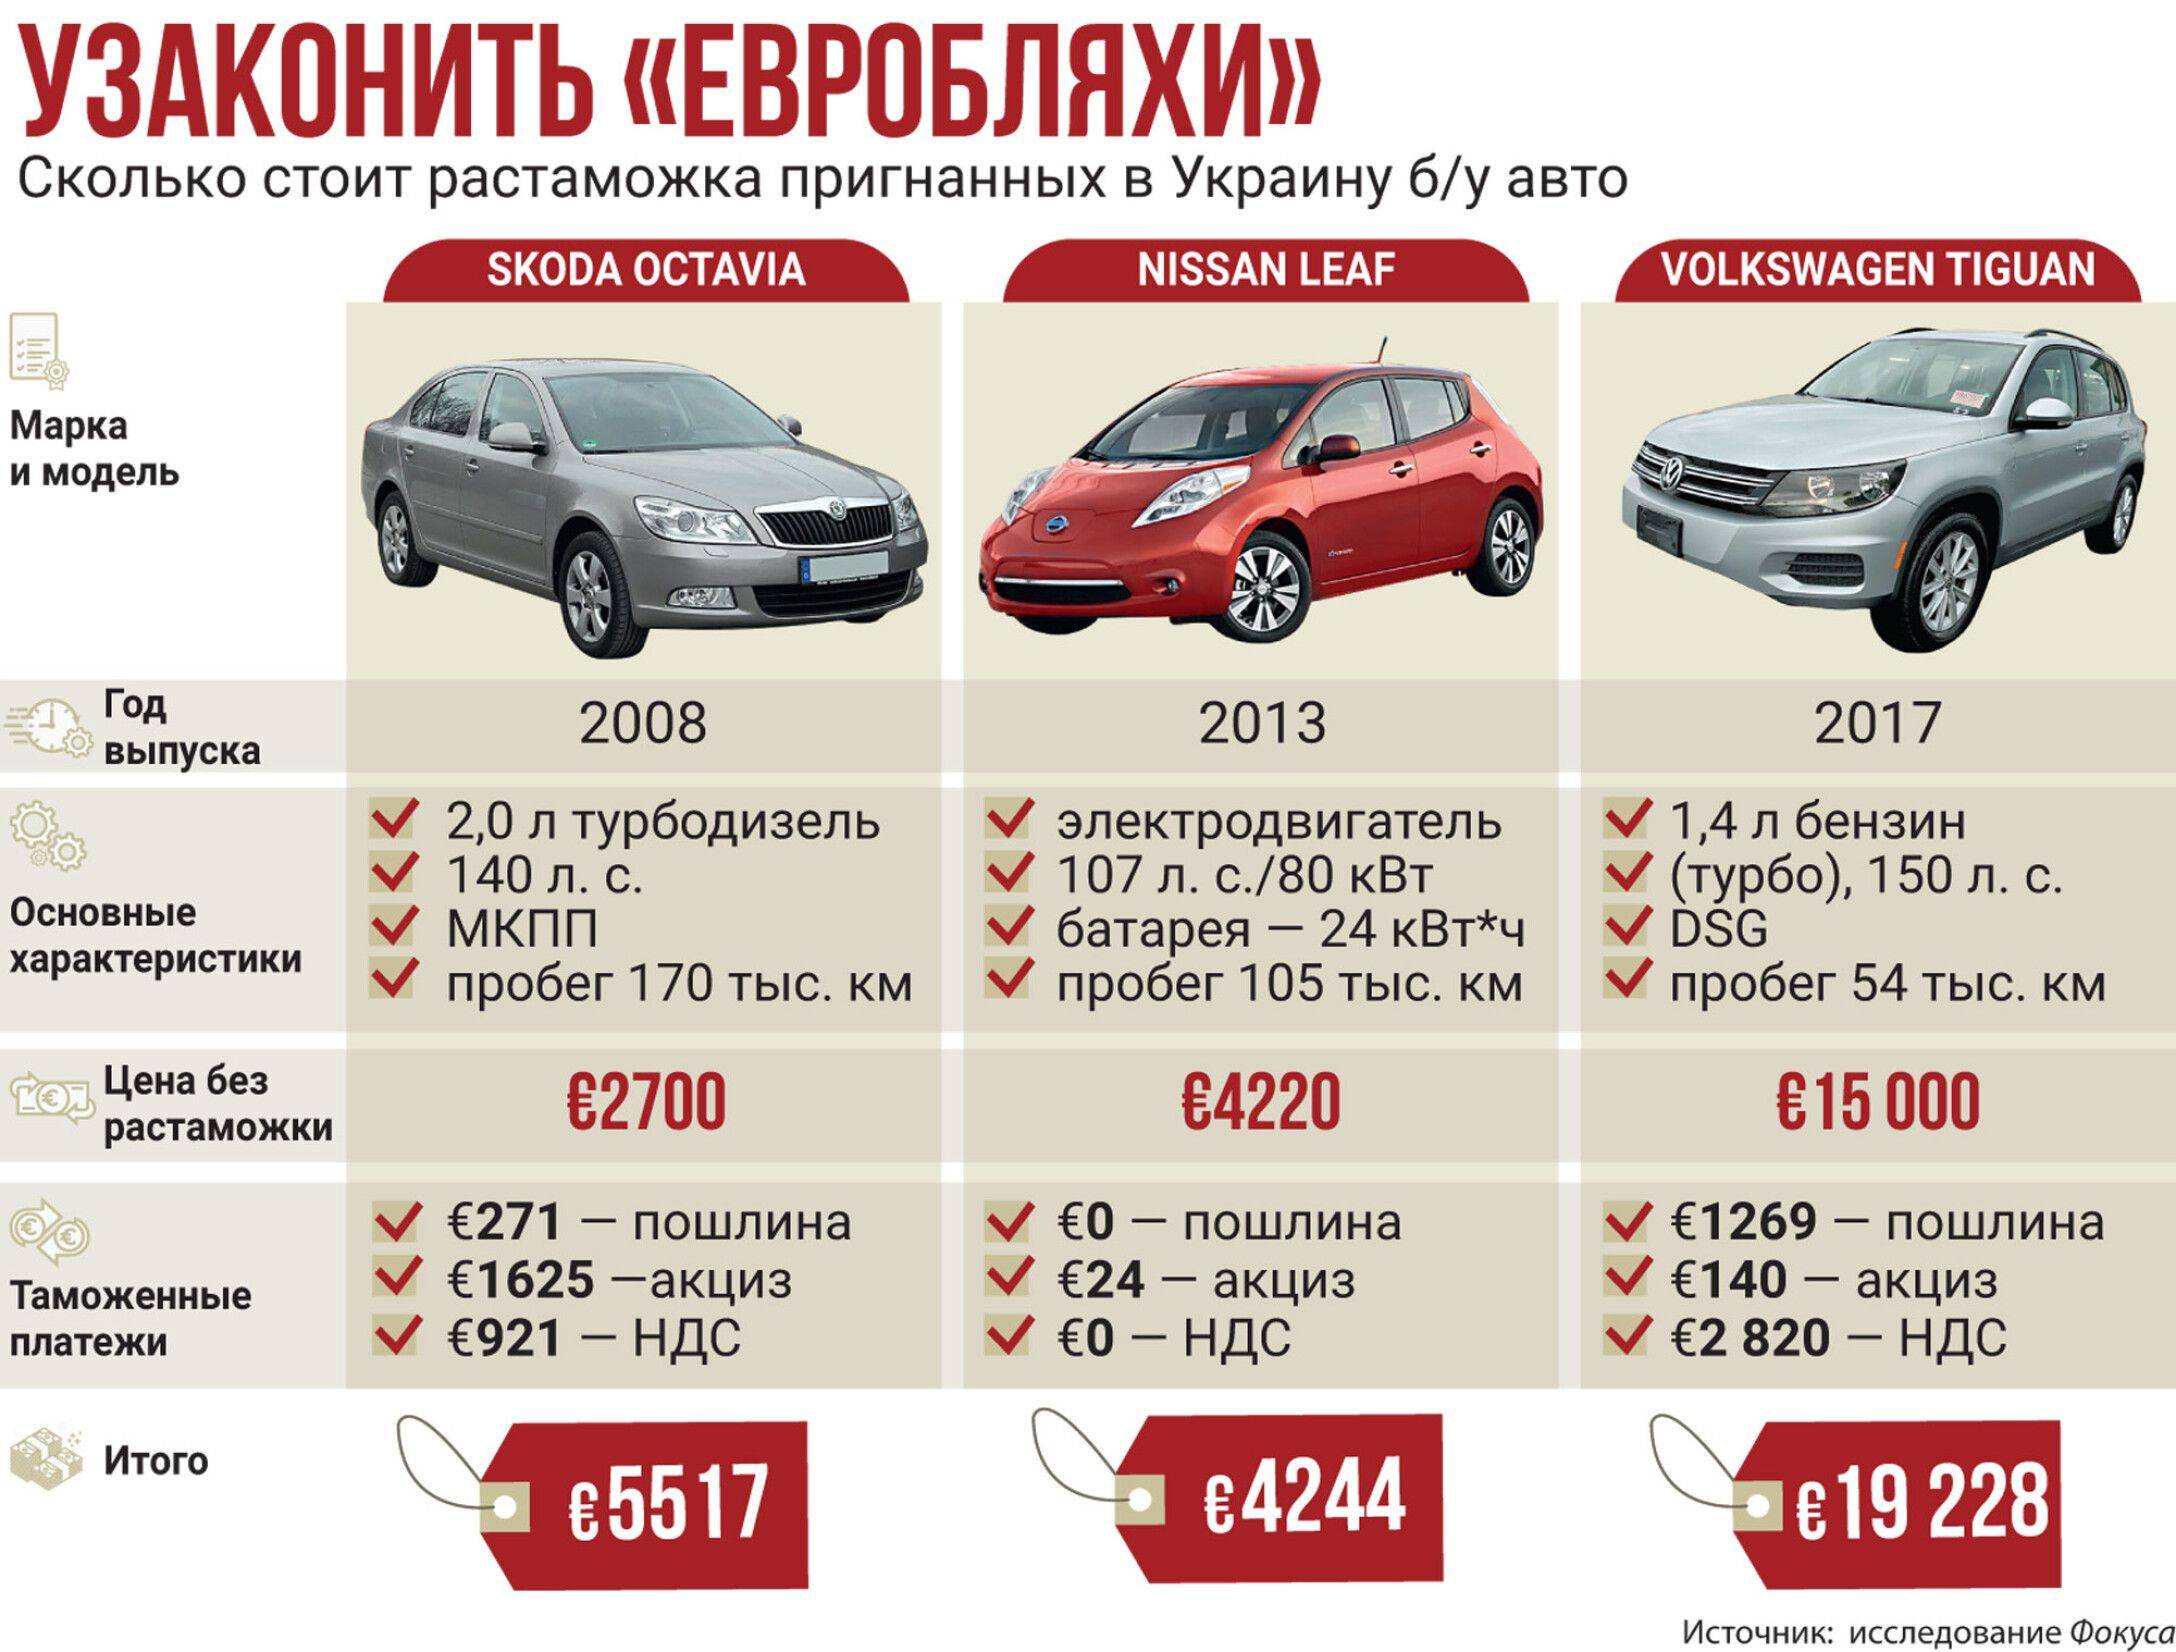 Как растаможить автомобиль в россии в 2023 году: пошаговая инструкция, необходимые документы, правила и порядок | помощь водителям в 2023 году